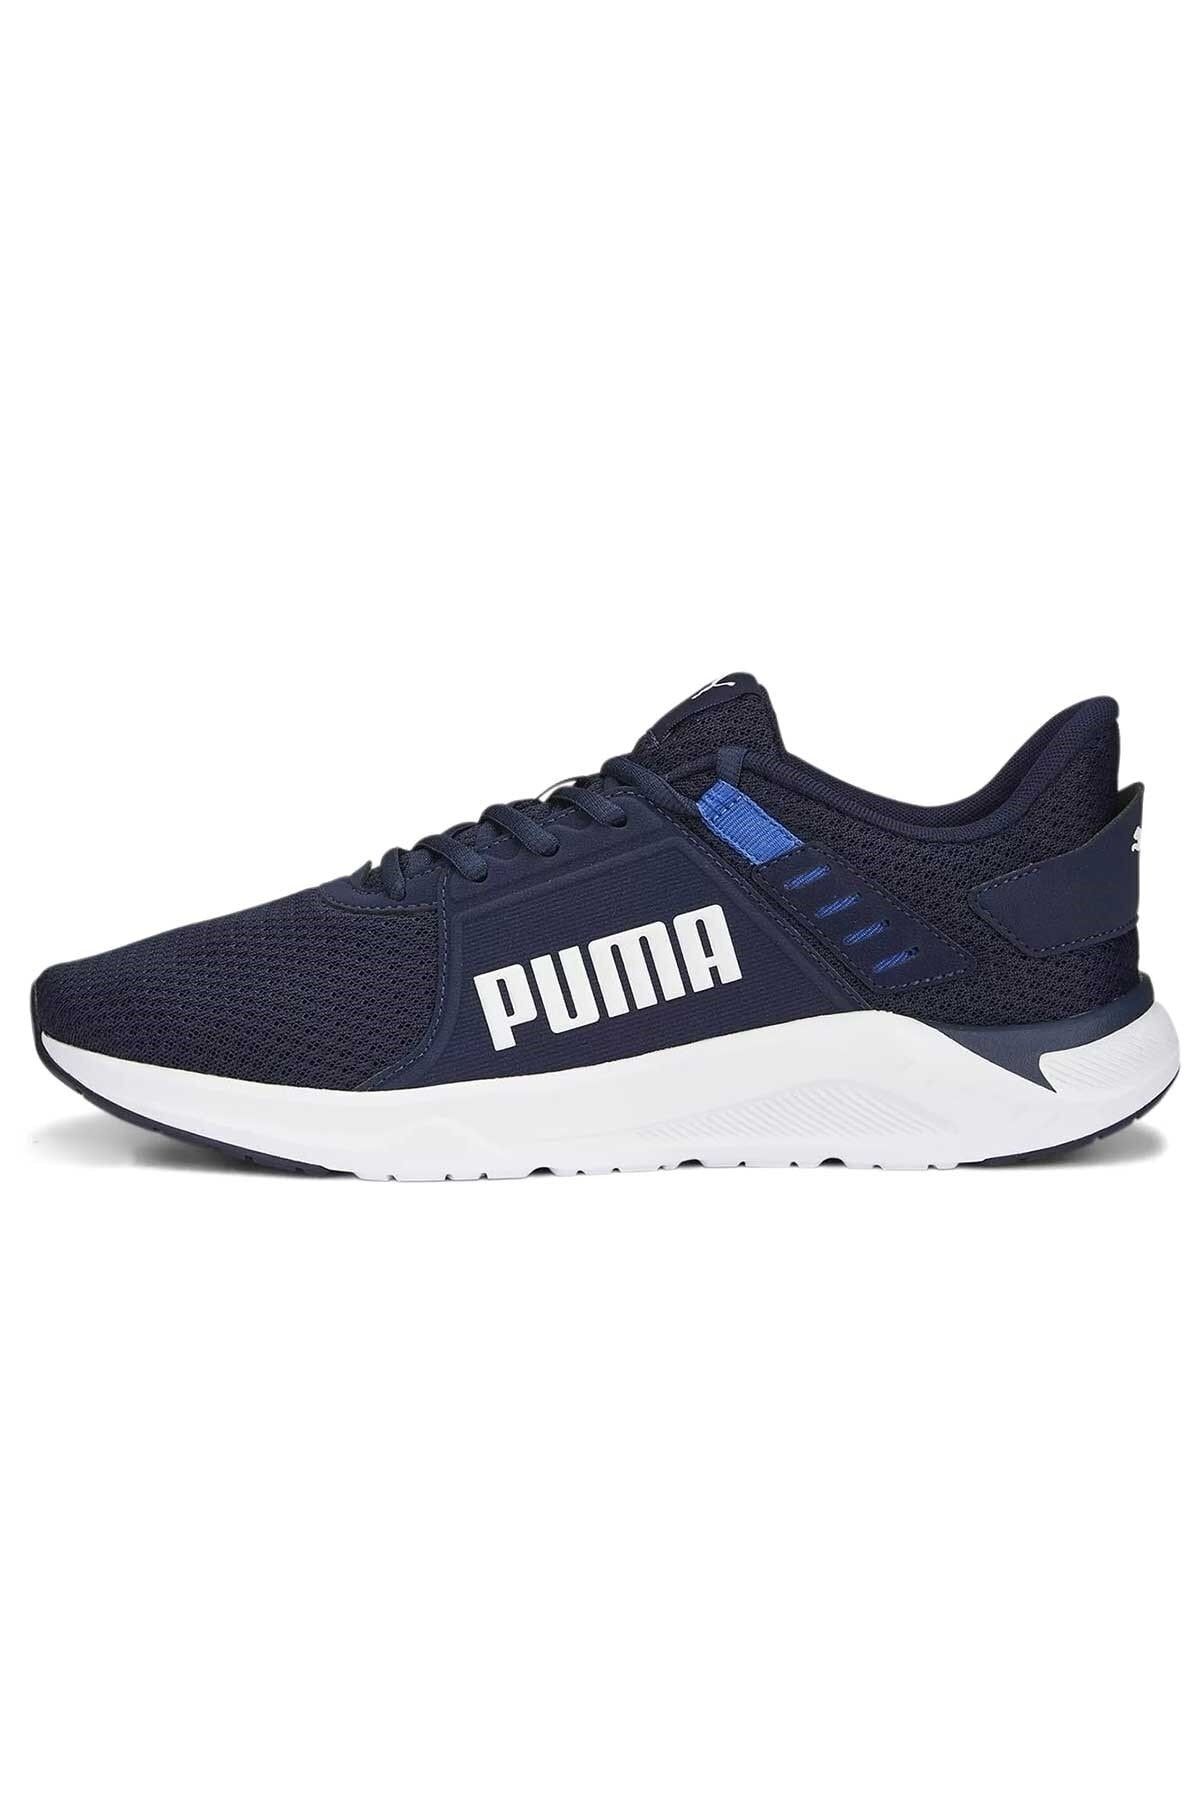 Puma Connetc Erkek Spor Ayakkabı